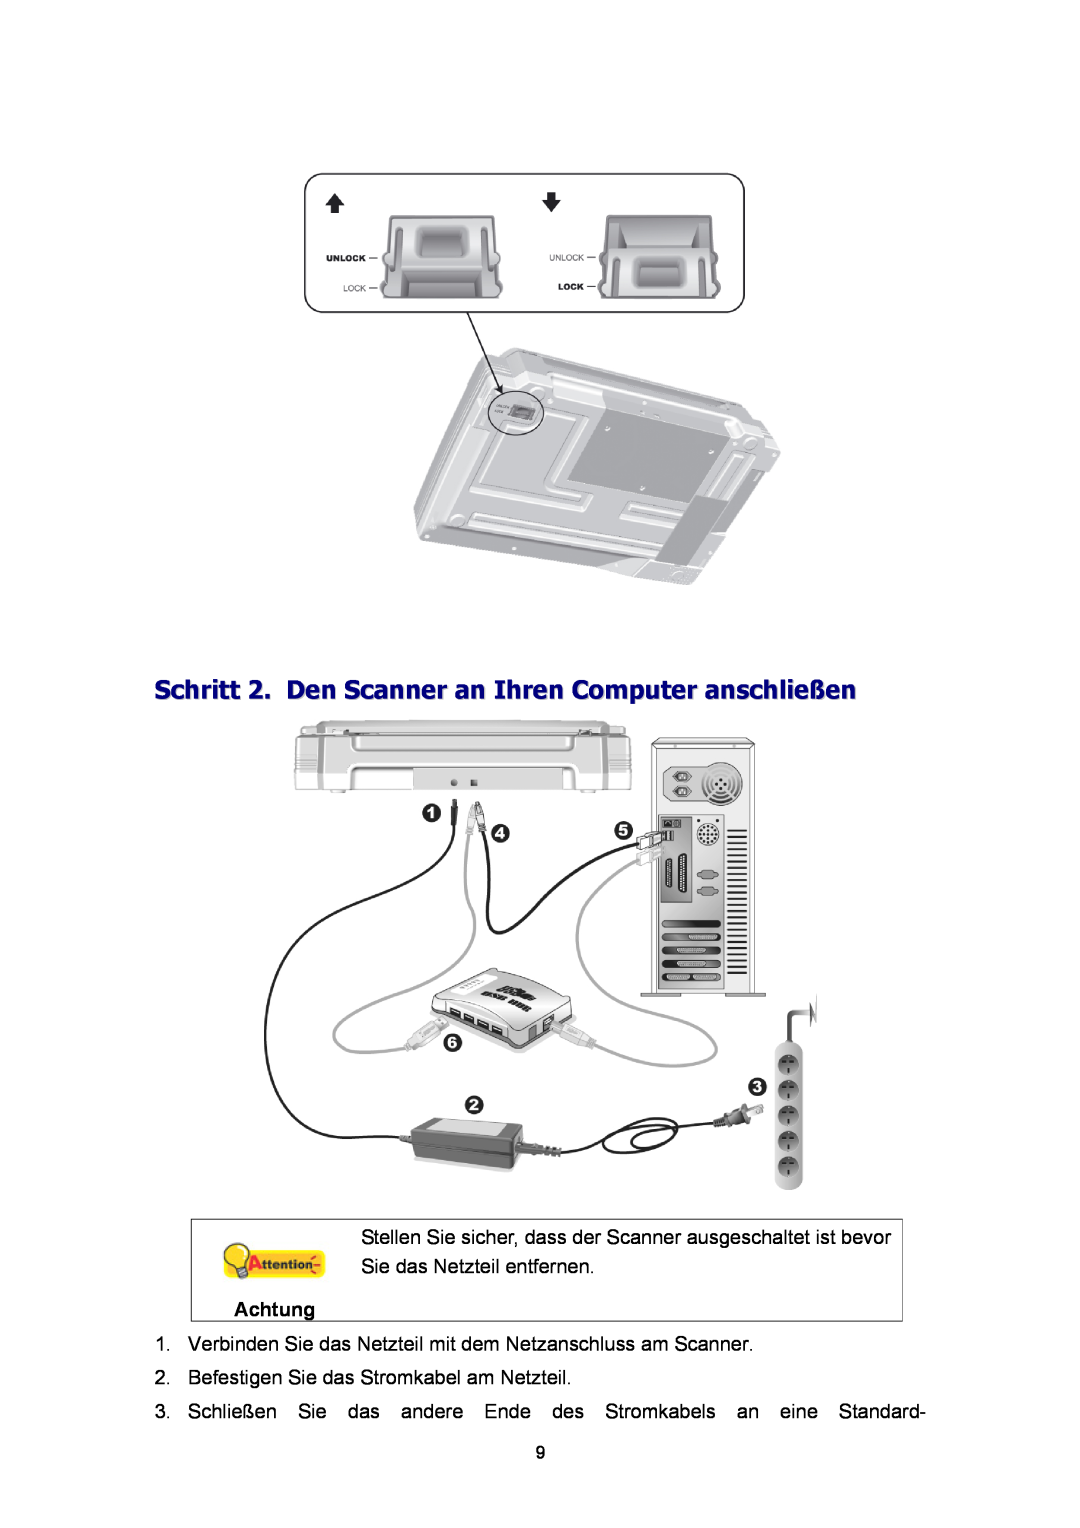 Plustek Scanner-Benutzerhandbuch, A360 manual Schritt 2. Den Scanner an Ihren Computer anschließen, Achtung 